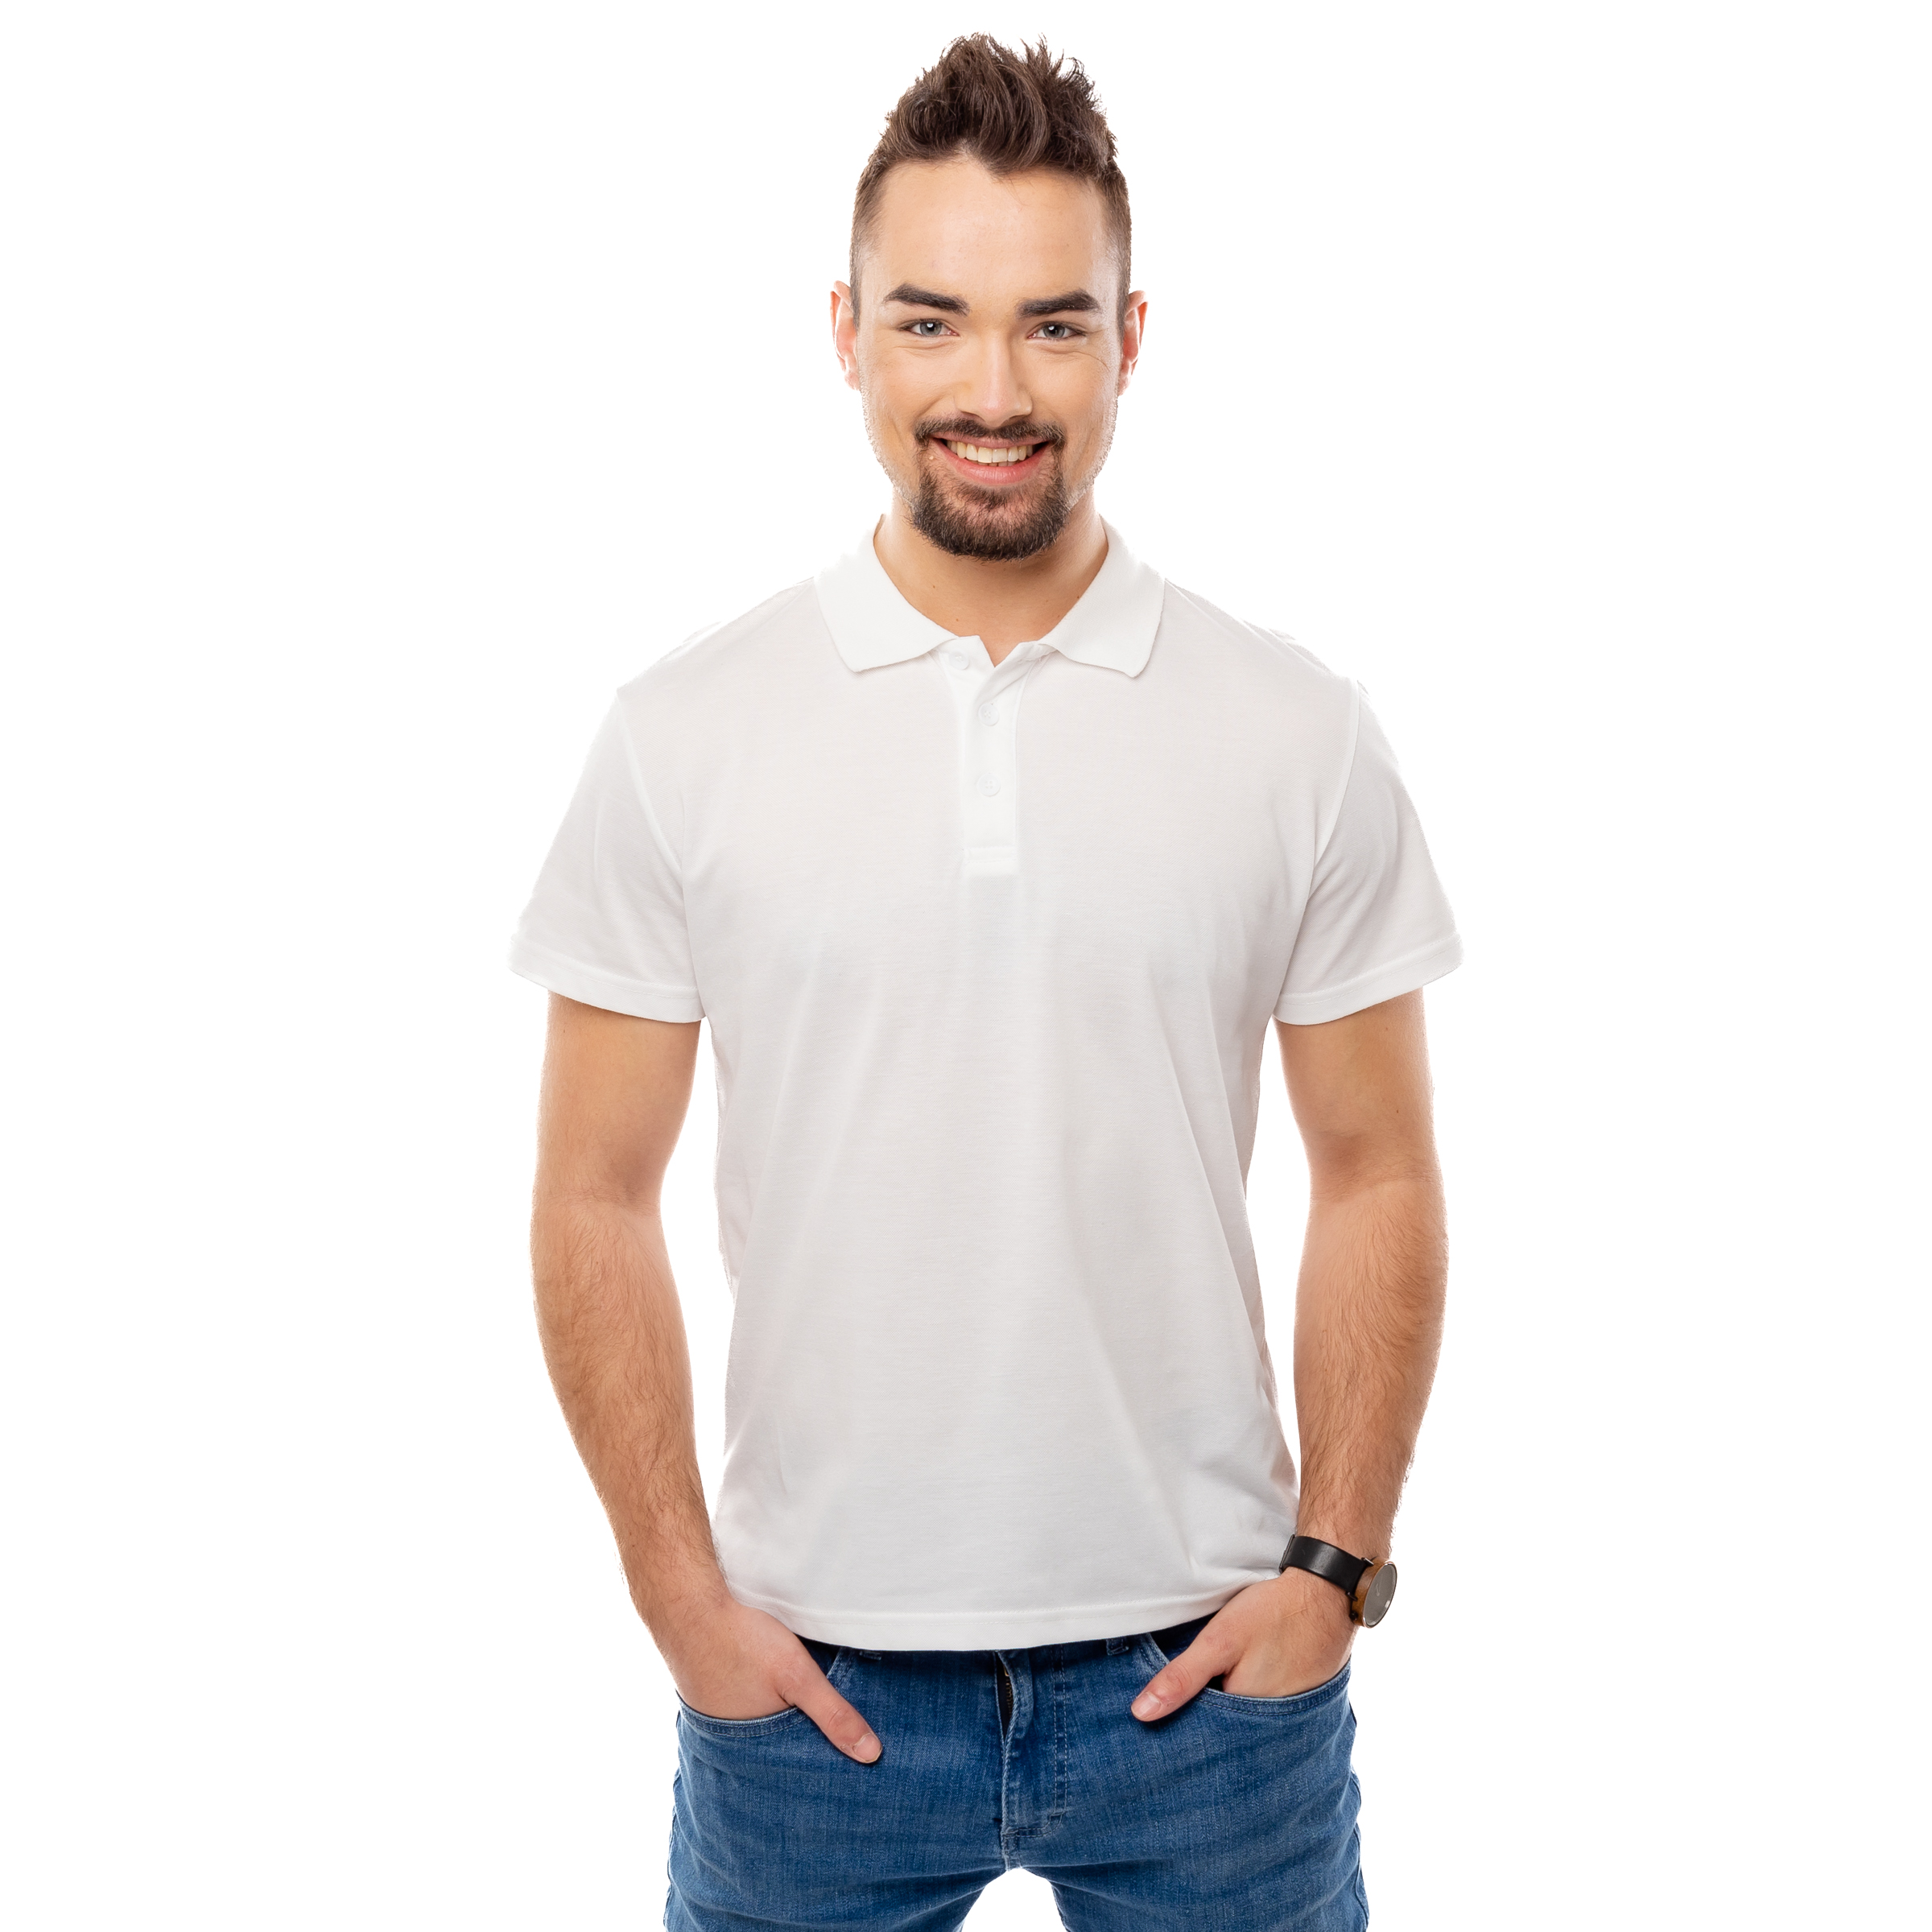 Men ́s T-shirt GLANO - white